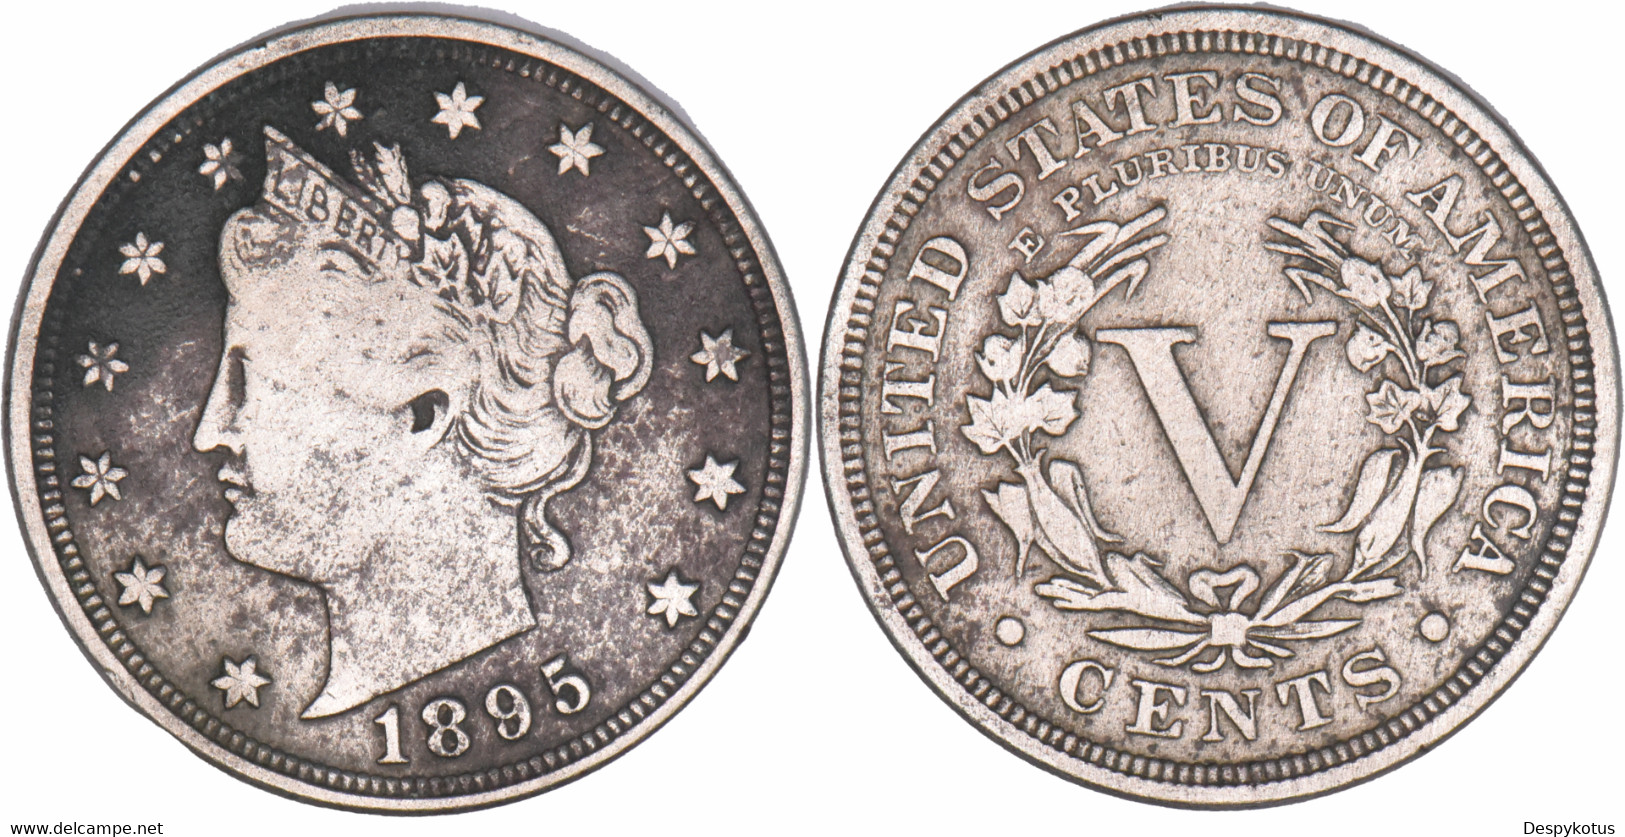 Etats-Unis - 1906 - Liberty Nickel - 5 Cents (V Cents) - 07-002 - 1883-1913: Liberty (Libertà)